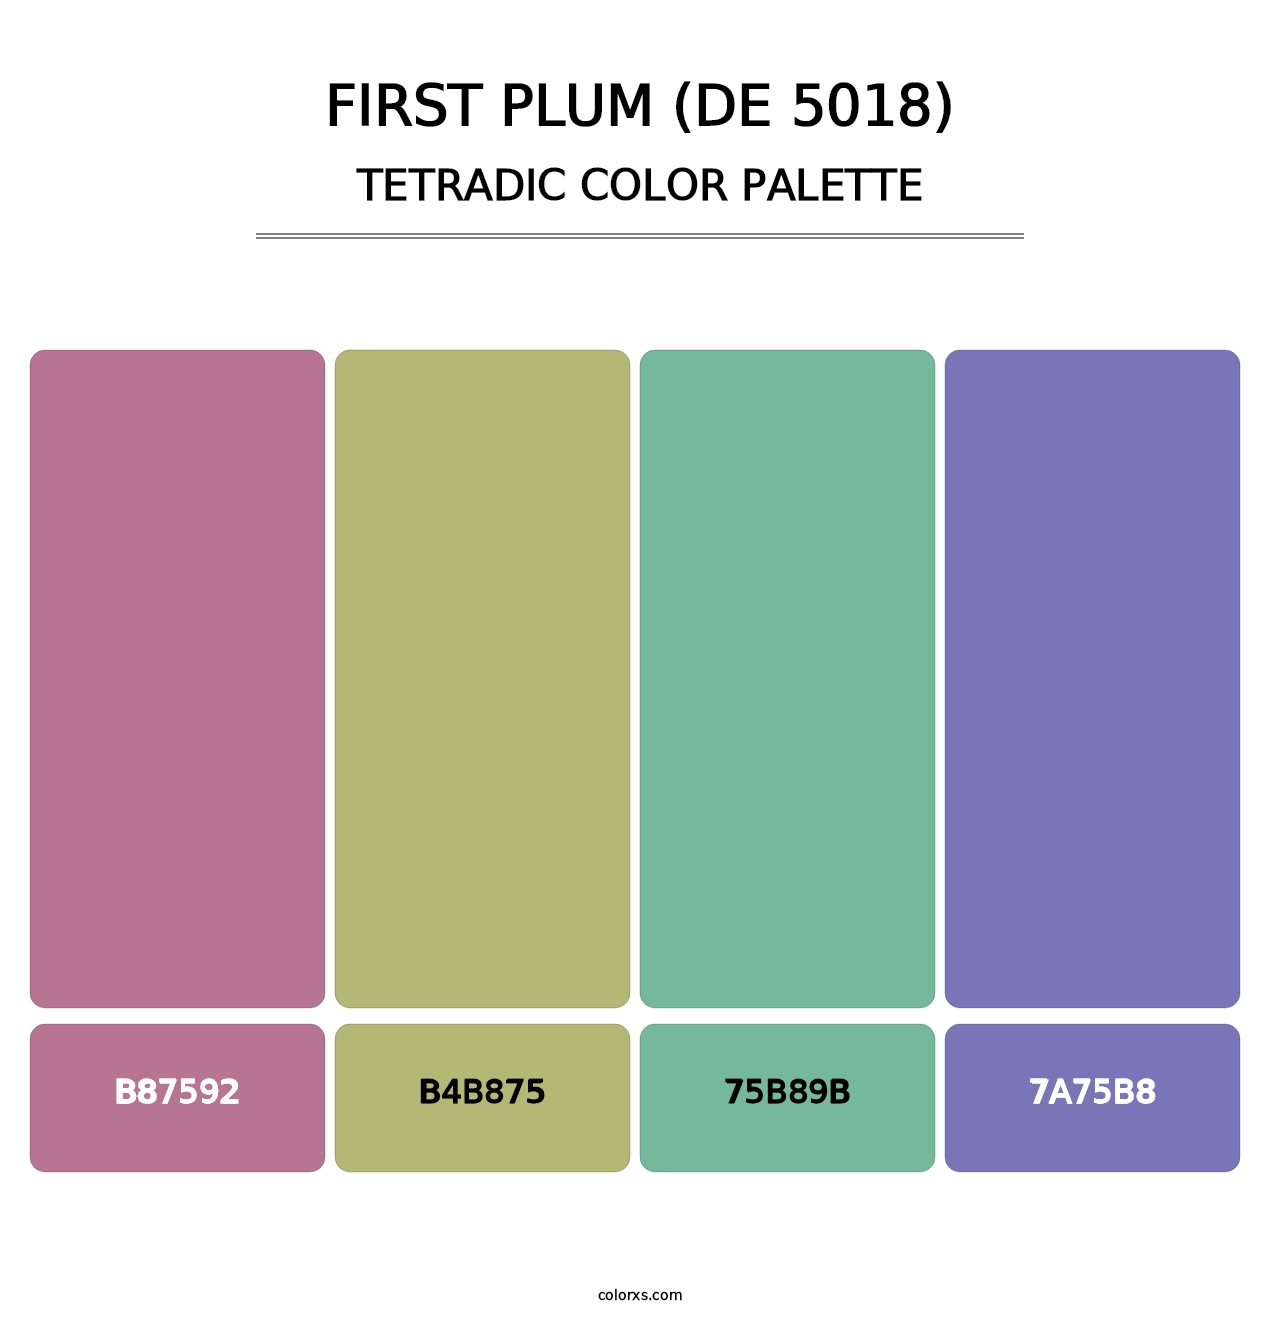 First Plum (DE 5018) - Tetradic Color Palette